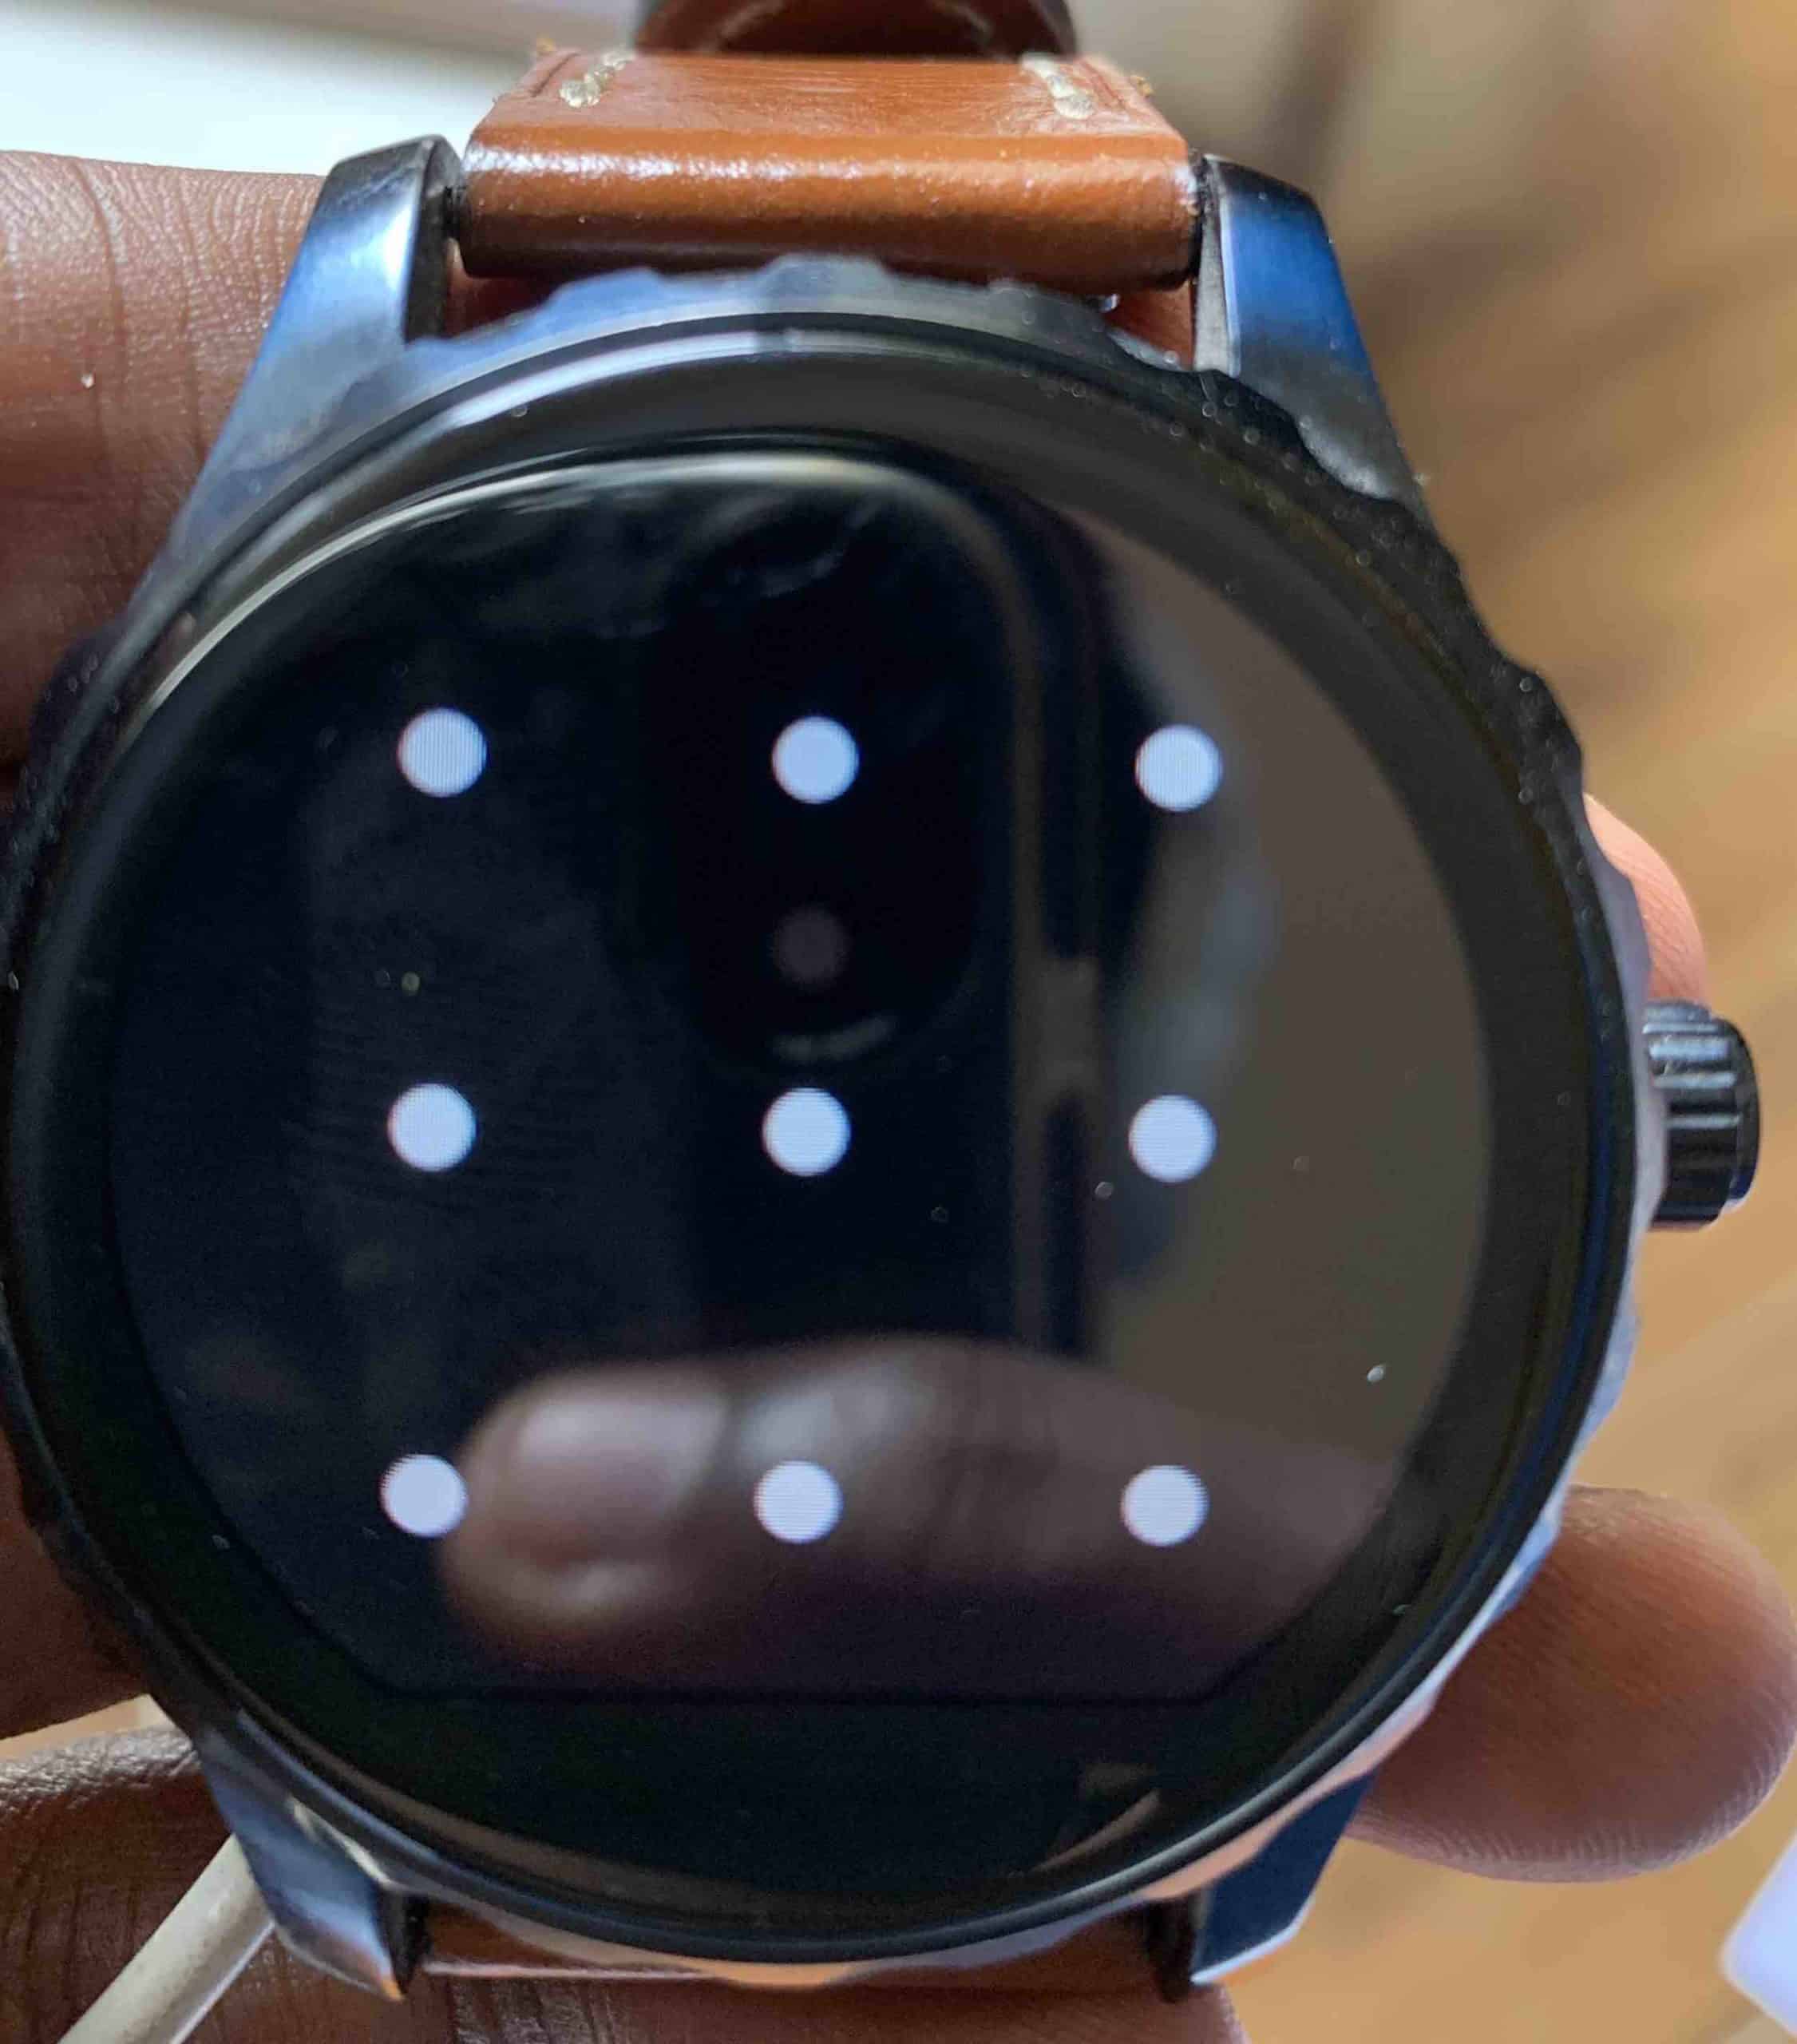 በእርስዎ Wear OS smartwatch ላይ የማያ ገጽ ቁልፍን እንዴት ማንቃት እንደሚቻል